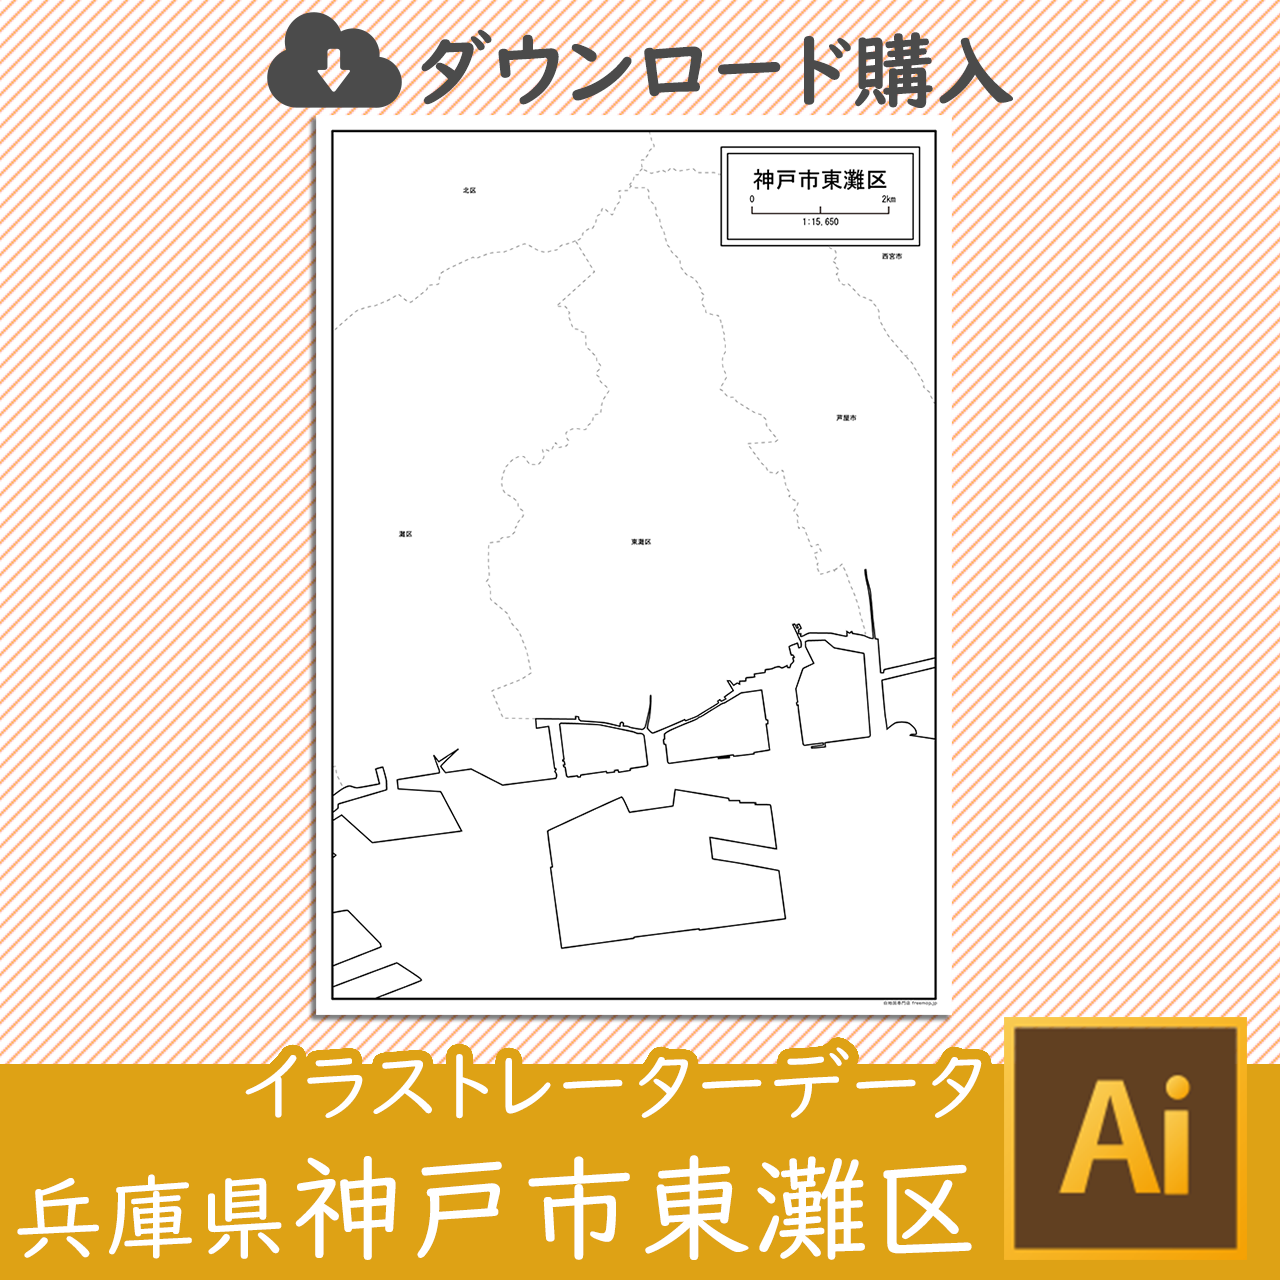 神戸市東灘区のaiデータのサムネイル画像